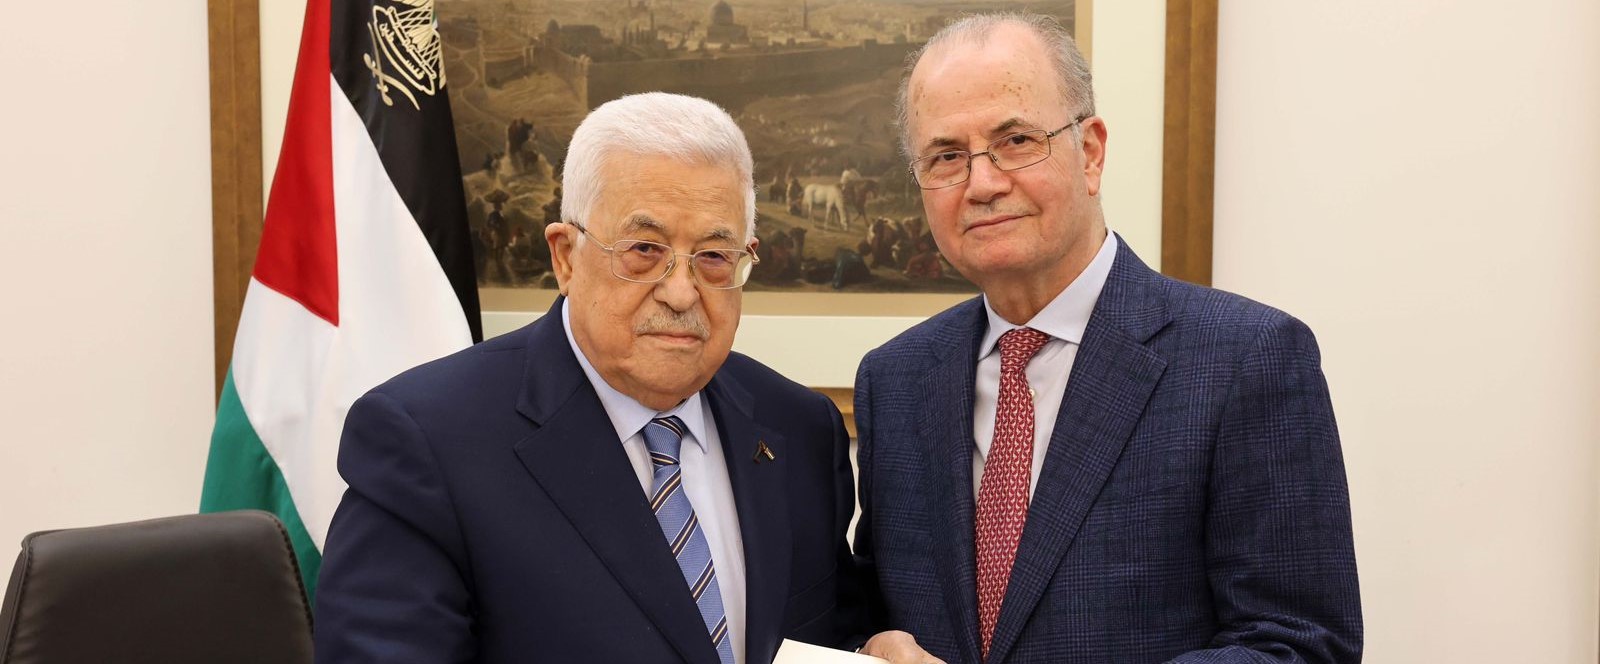 عباس يصادق على تشكيلة الحكومة الفلسطينية الجديدة برئاسة محمد مصطفى